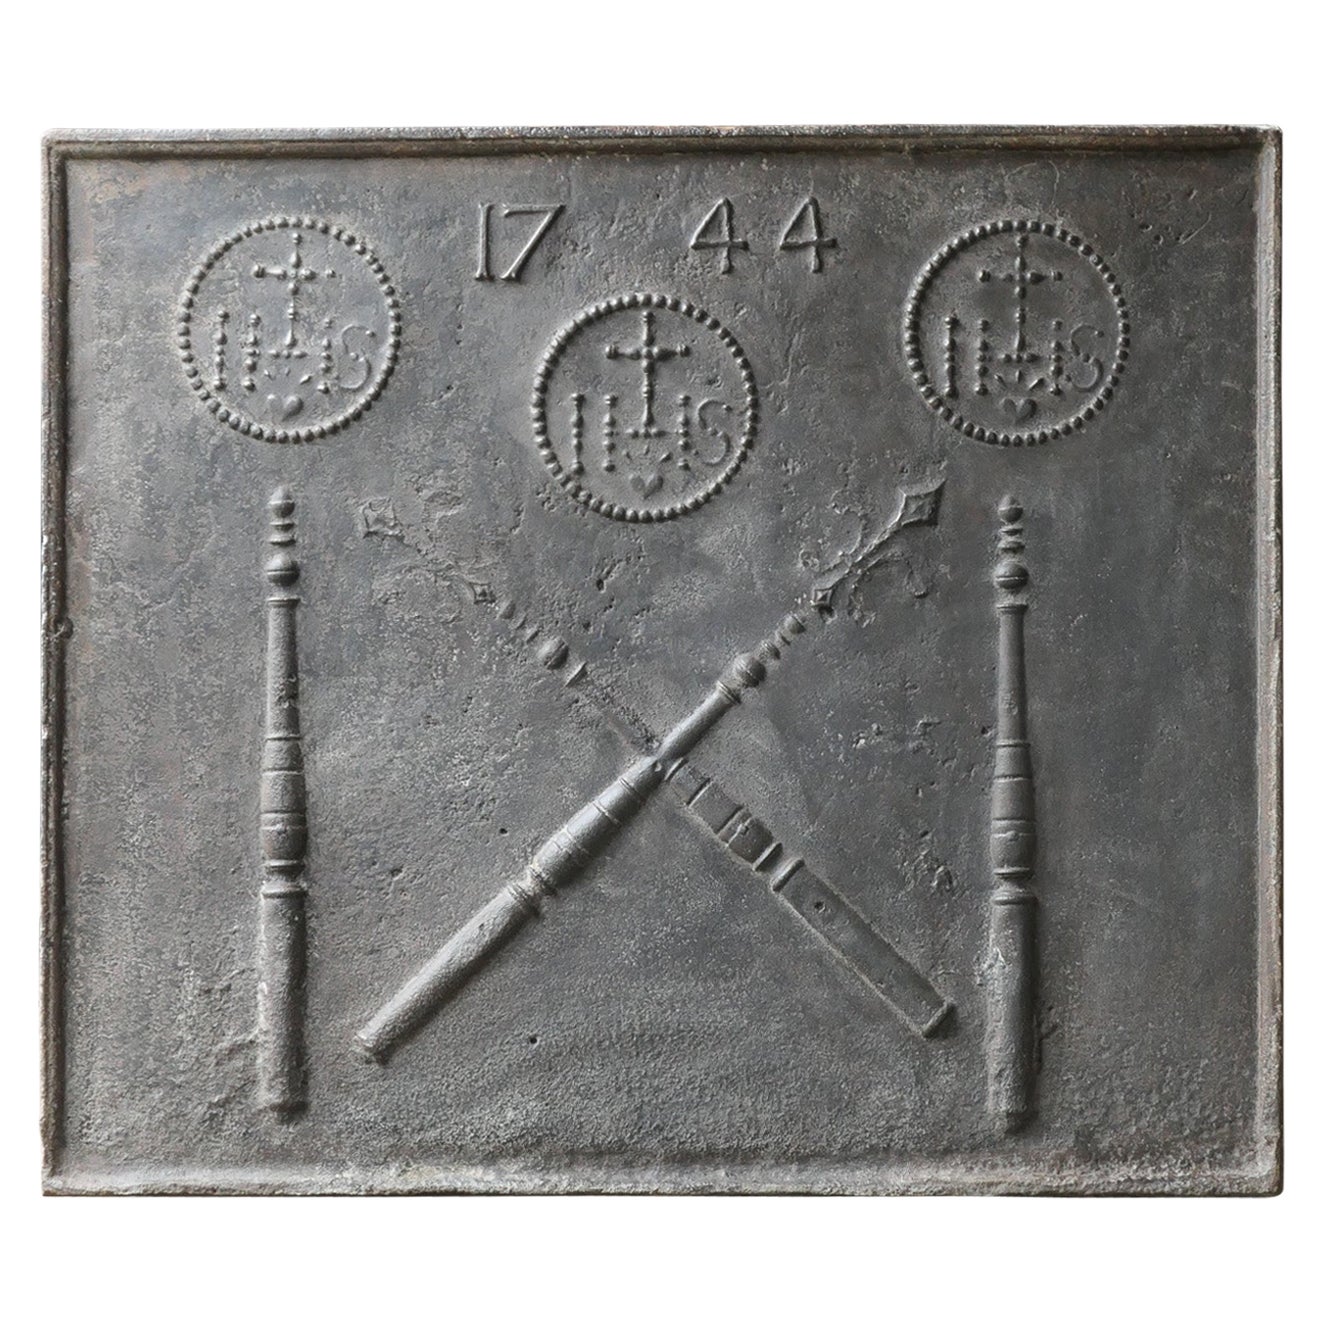 Grande plaque de cheminée du 18ème siècle « Pillars with IHS Monogram » (pillars avec monogramme IHS)